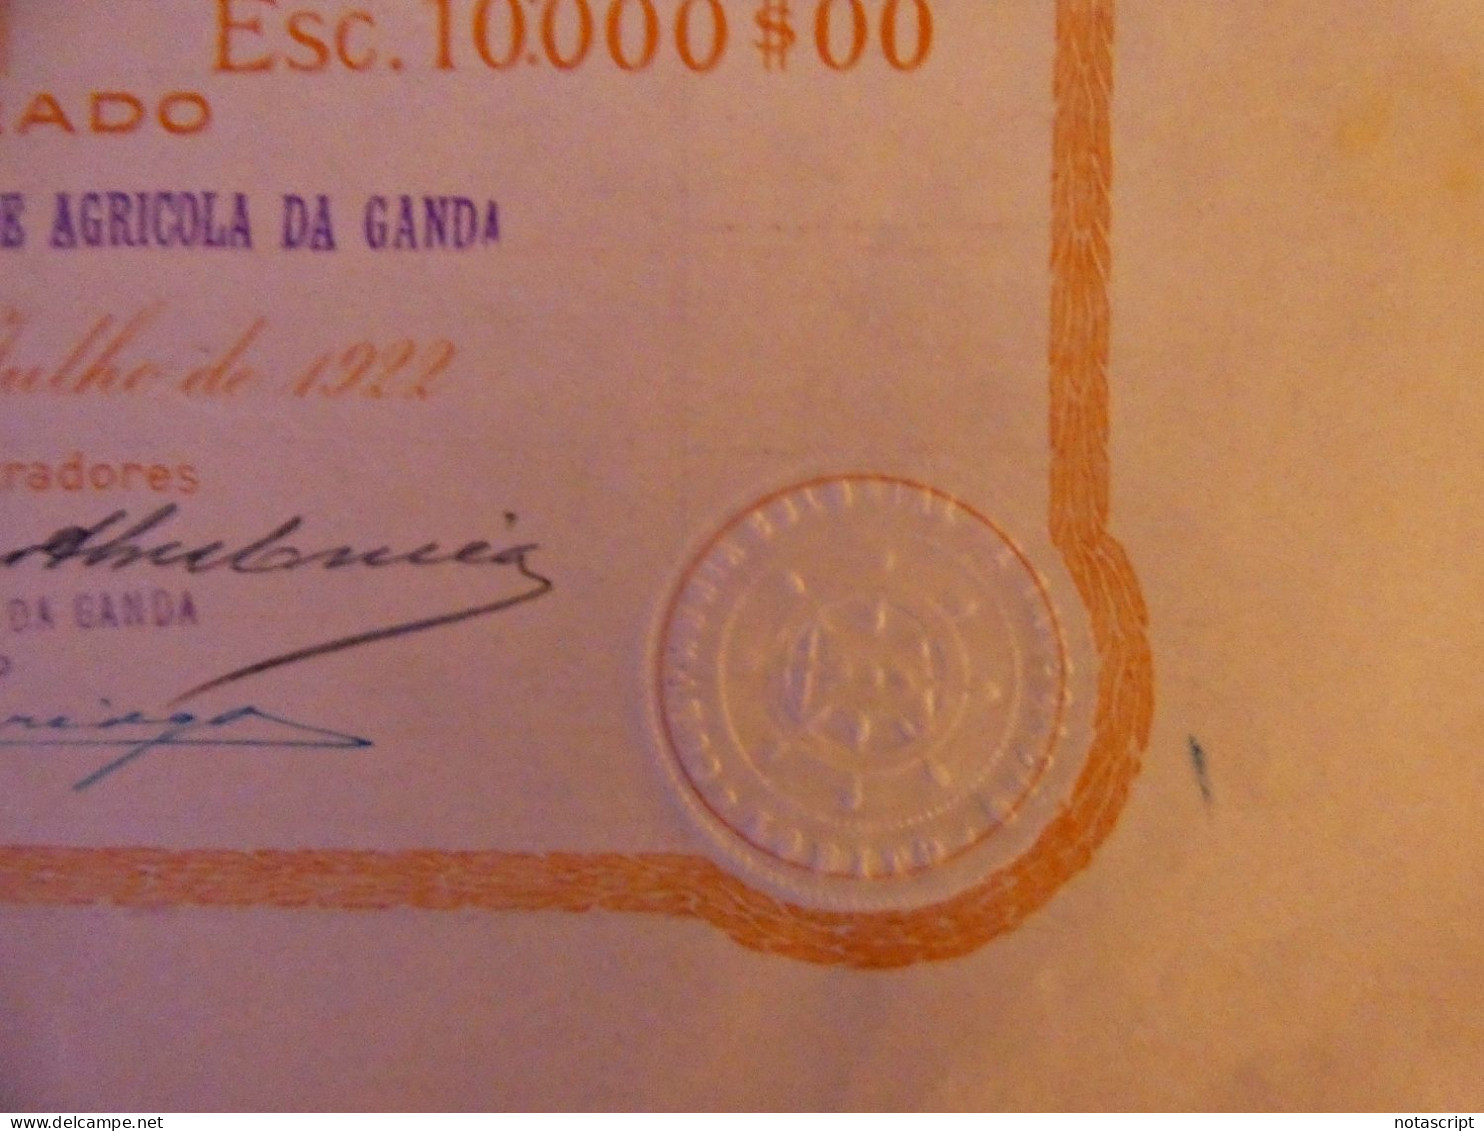 COMPANHIA COLONIAL  DE NAVEGAÇAO SA ,Lobito (Portuguese Angola)    1922 share Certificate - Schiffahrt